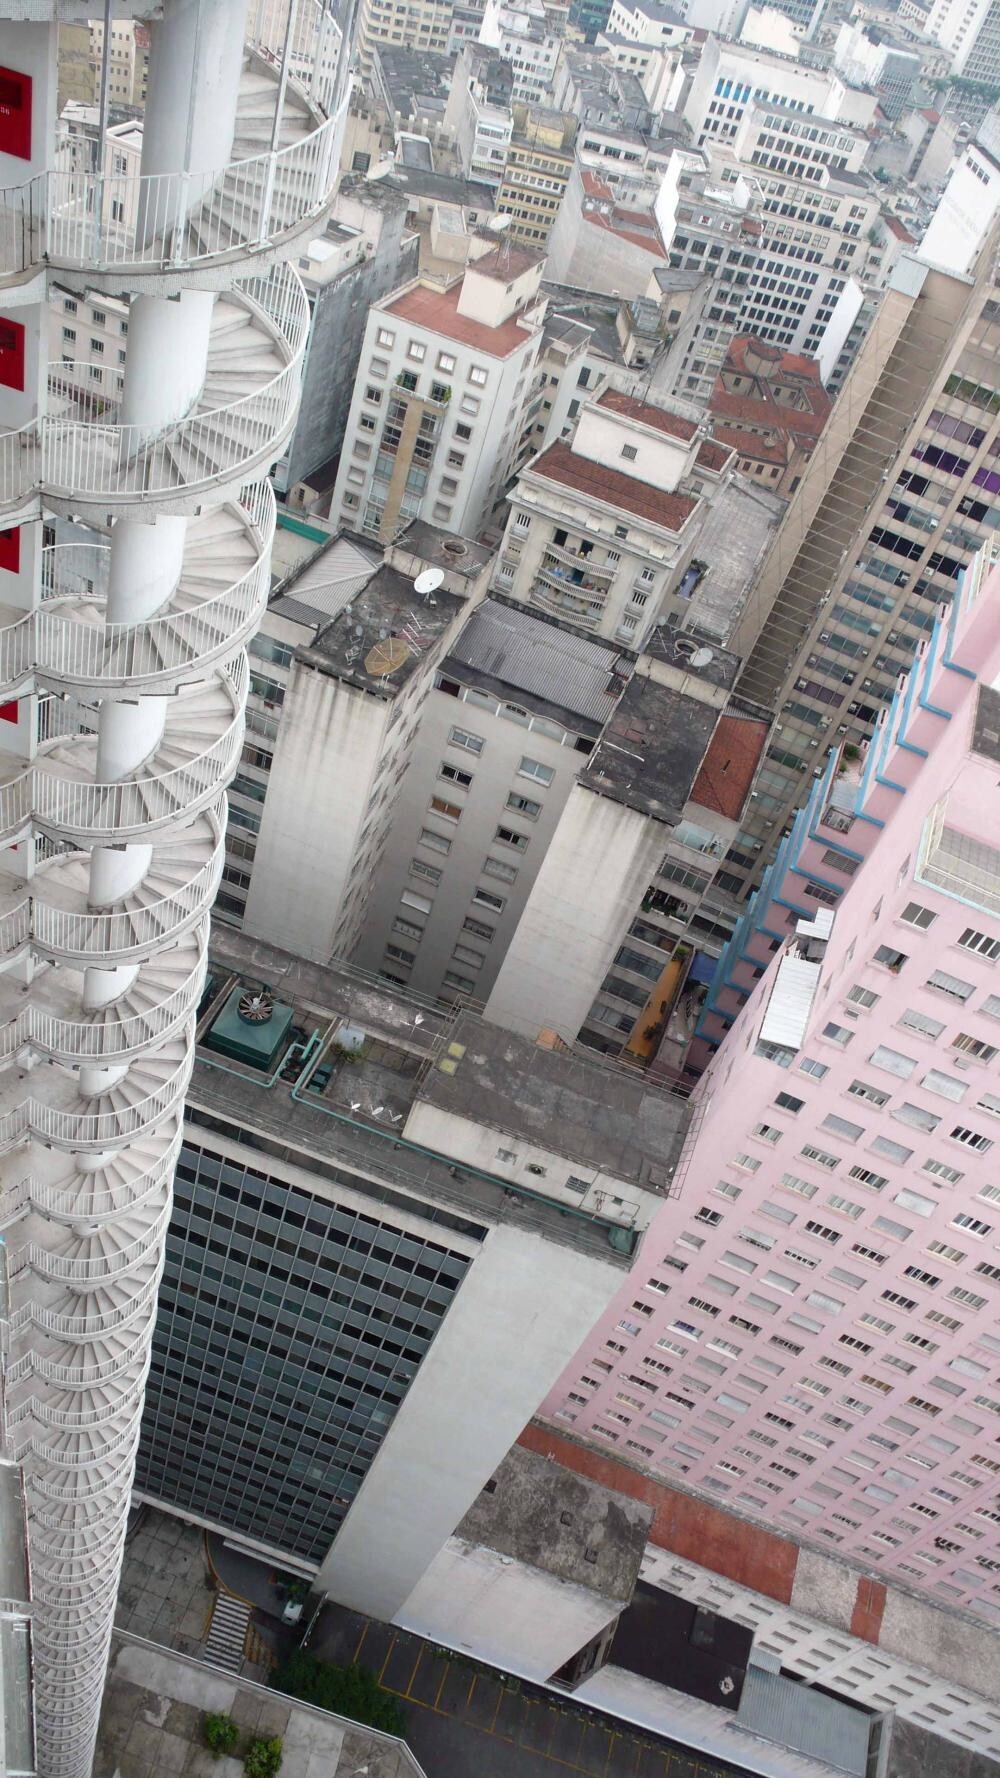 13. В Бразилии есть многоквартирный дом с винтовой лестницей высотой 40 этажей, прикрепленной снаружи и предназначенной для пожарной безопасности